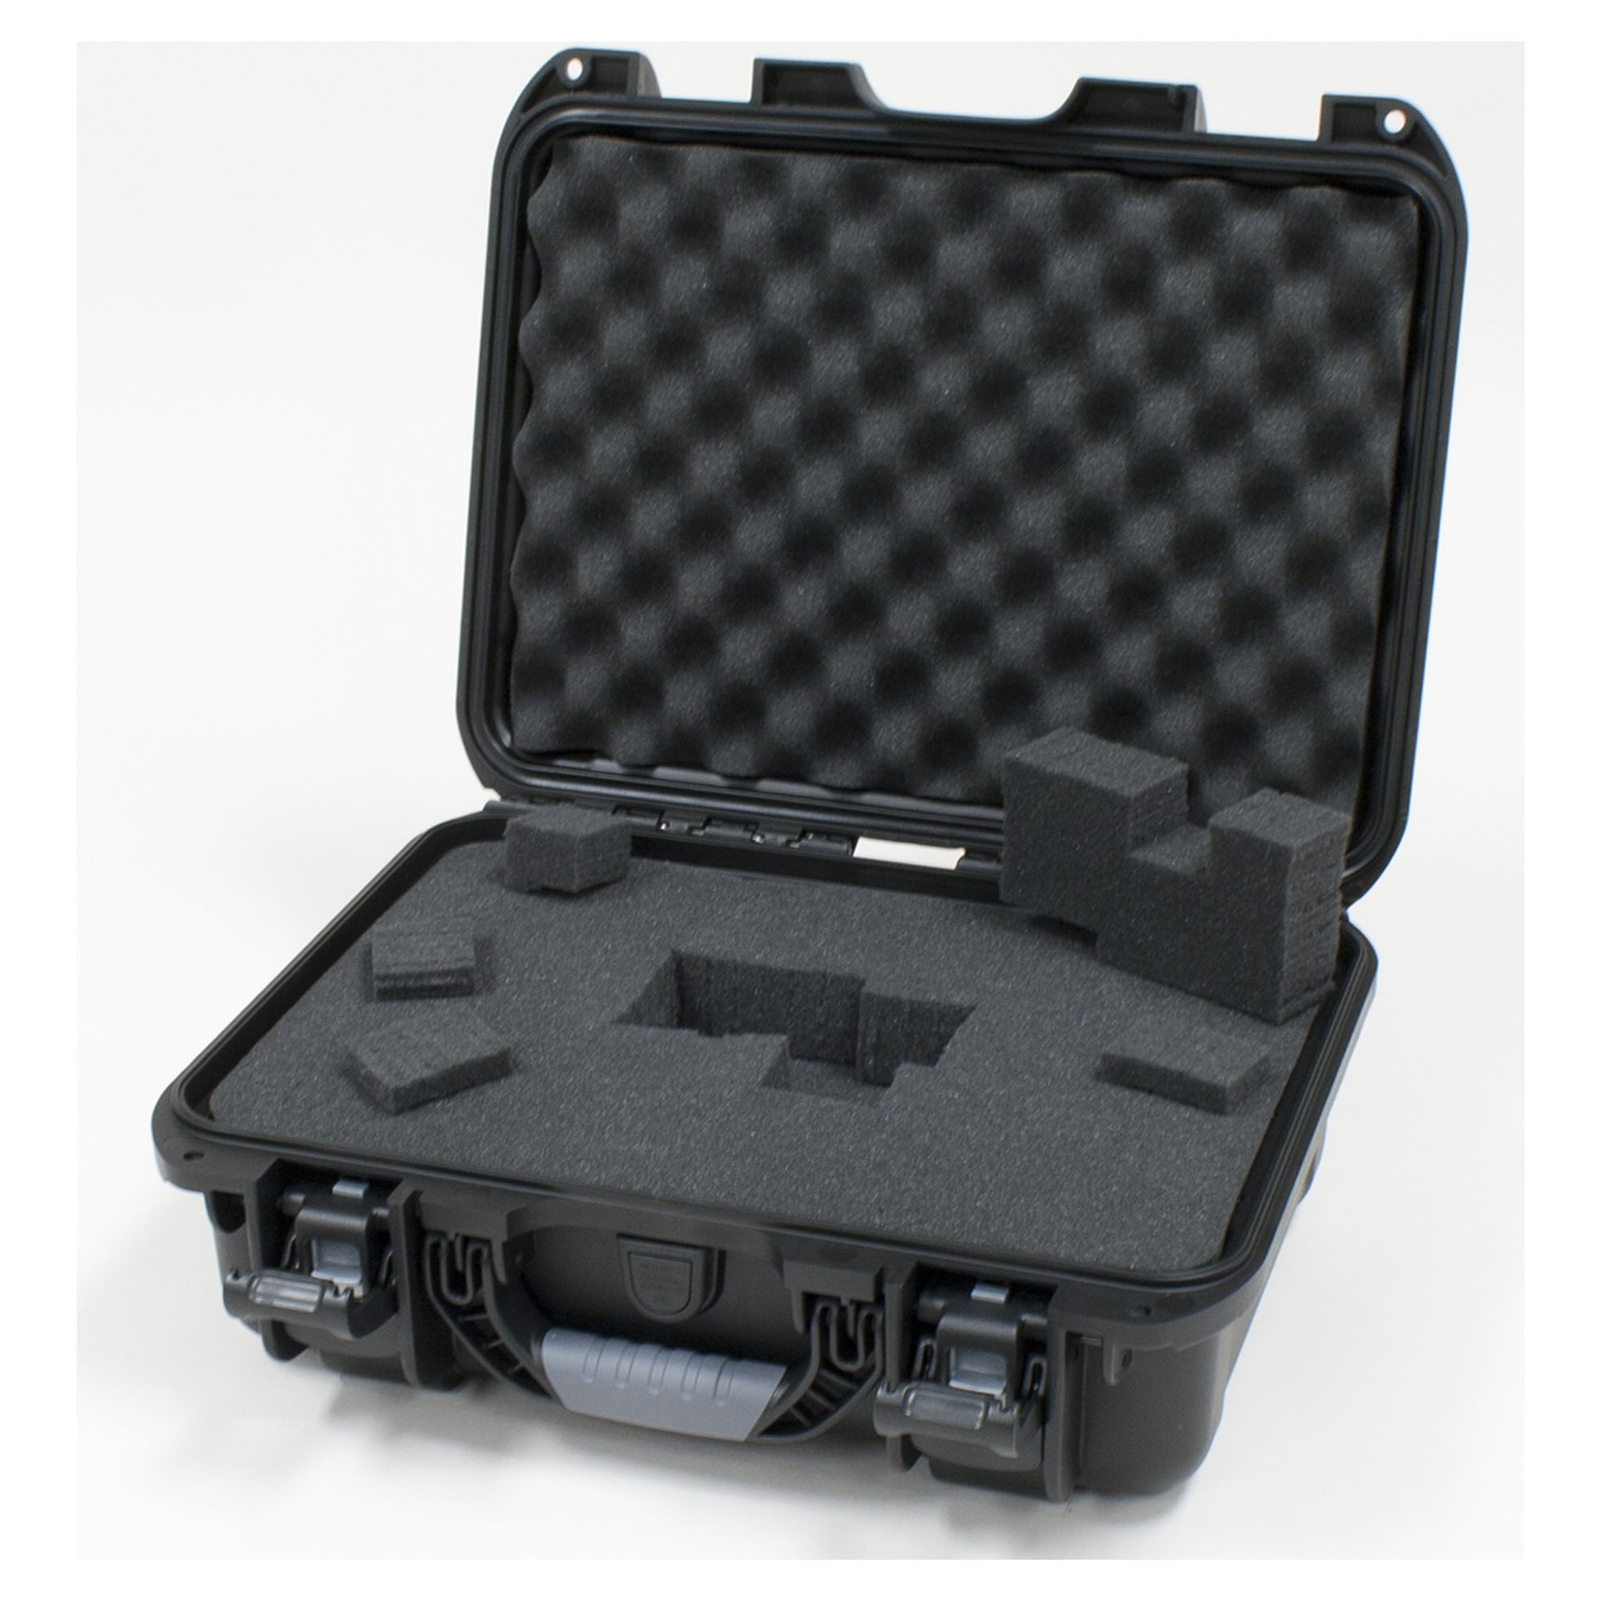 Gator Waterproof Case With Diced Foam - 15" x 10.5" x 6.2"